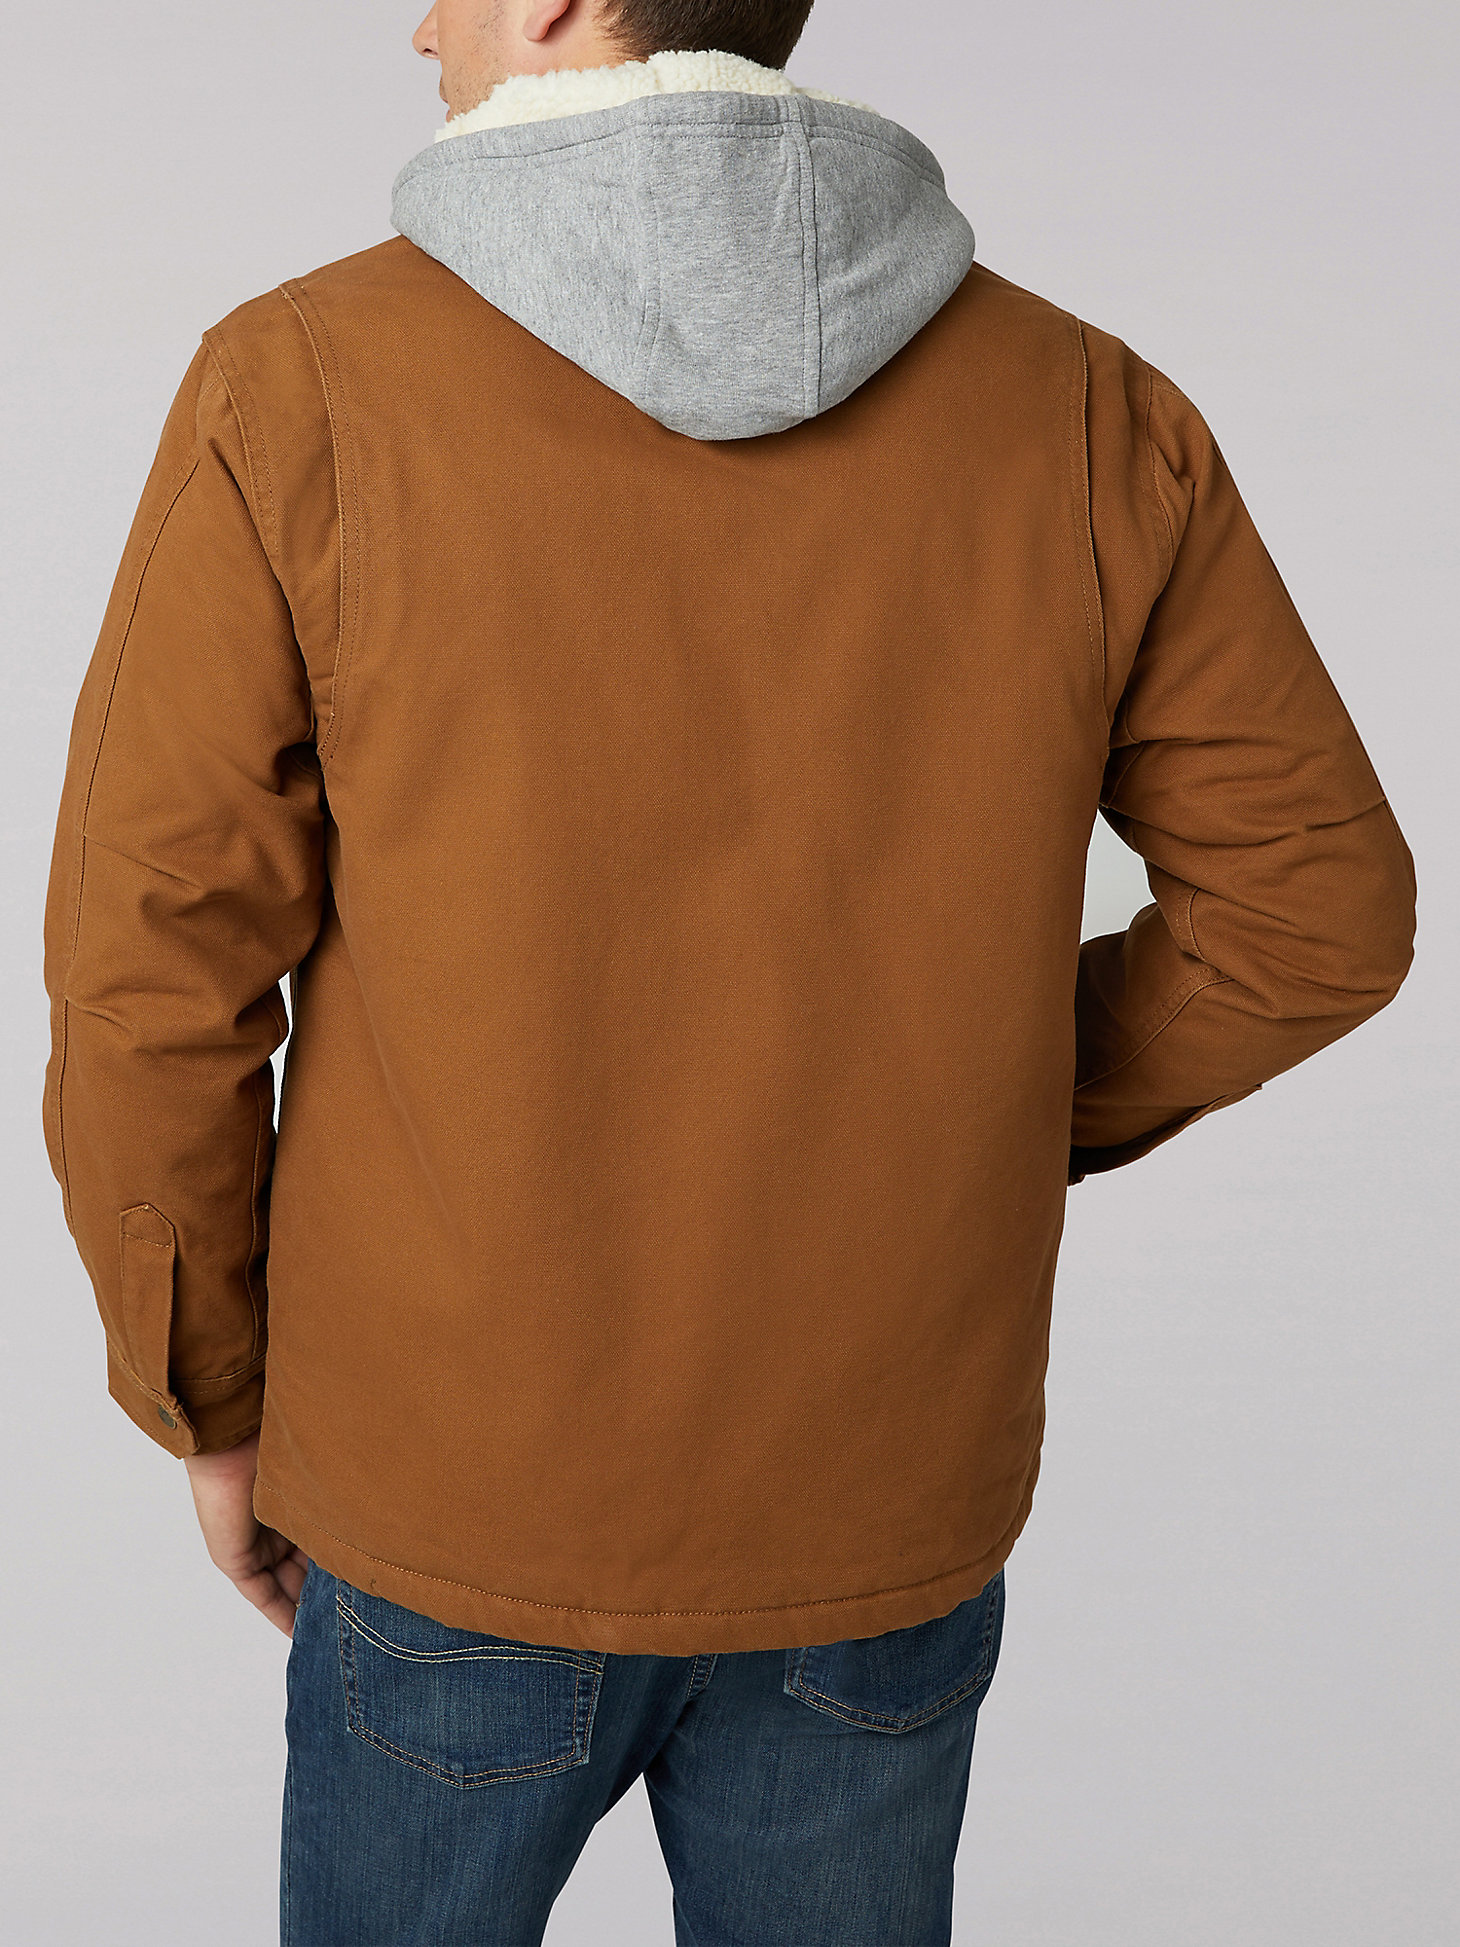 Men's Sherpa Lined Canvas Fleece Hood Jacket in Tobacco alternative view 1